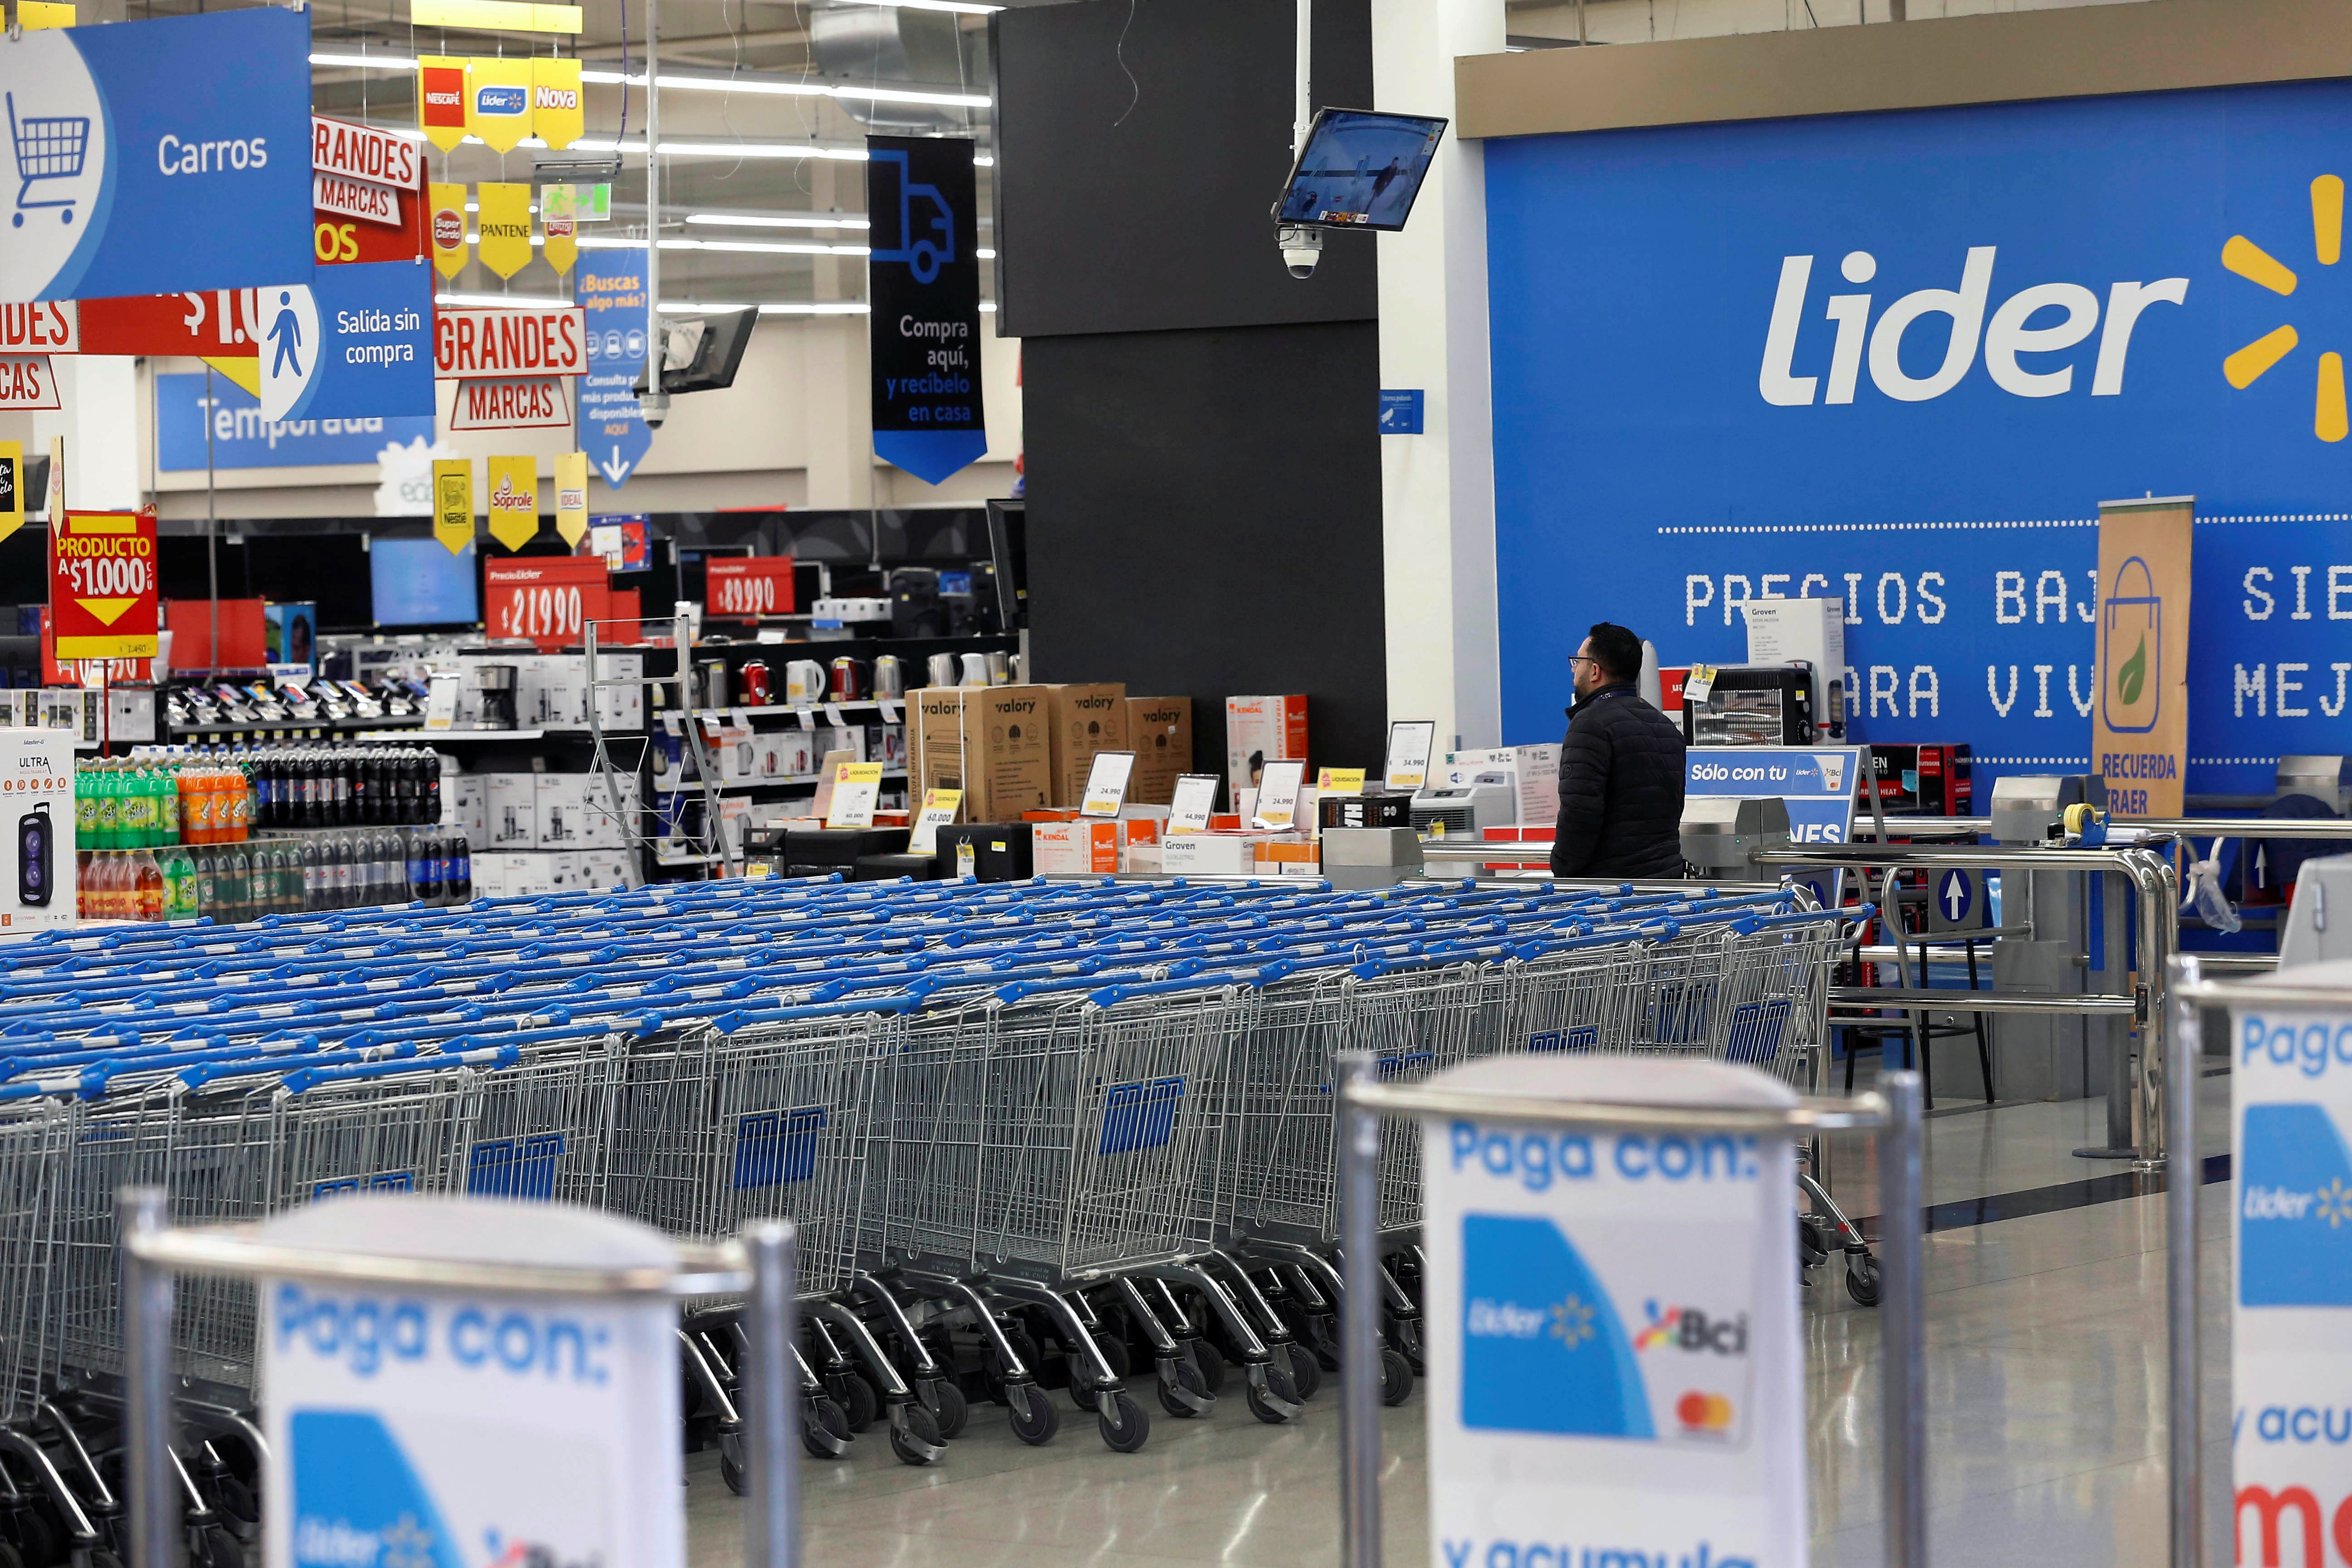 The supermarket Lider of the retailer Walmart is seen in Santiago